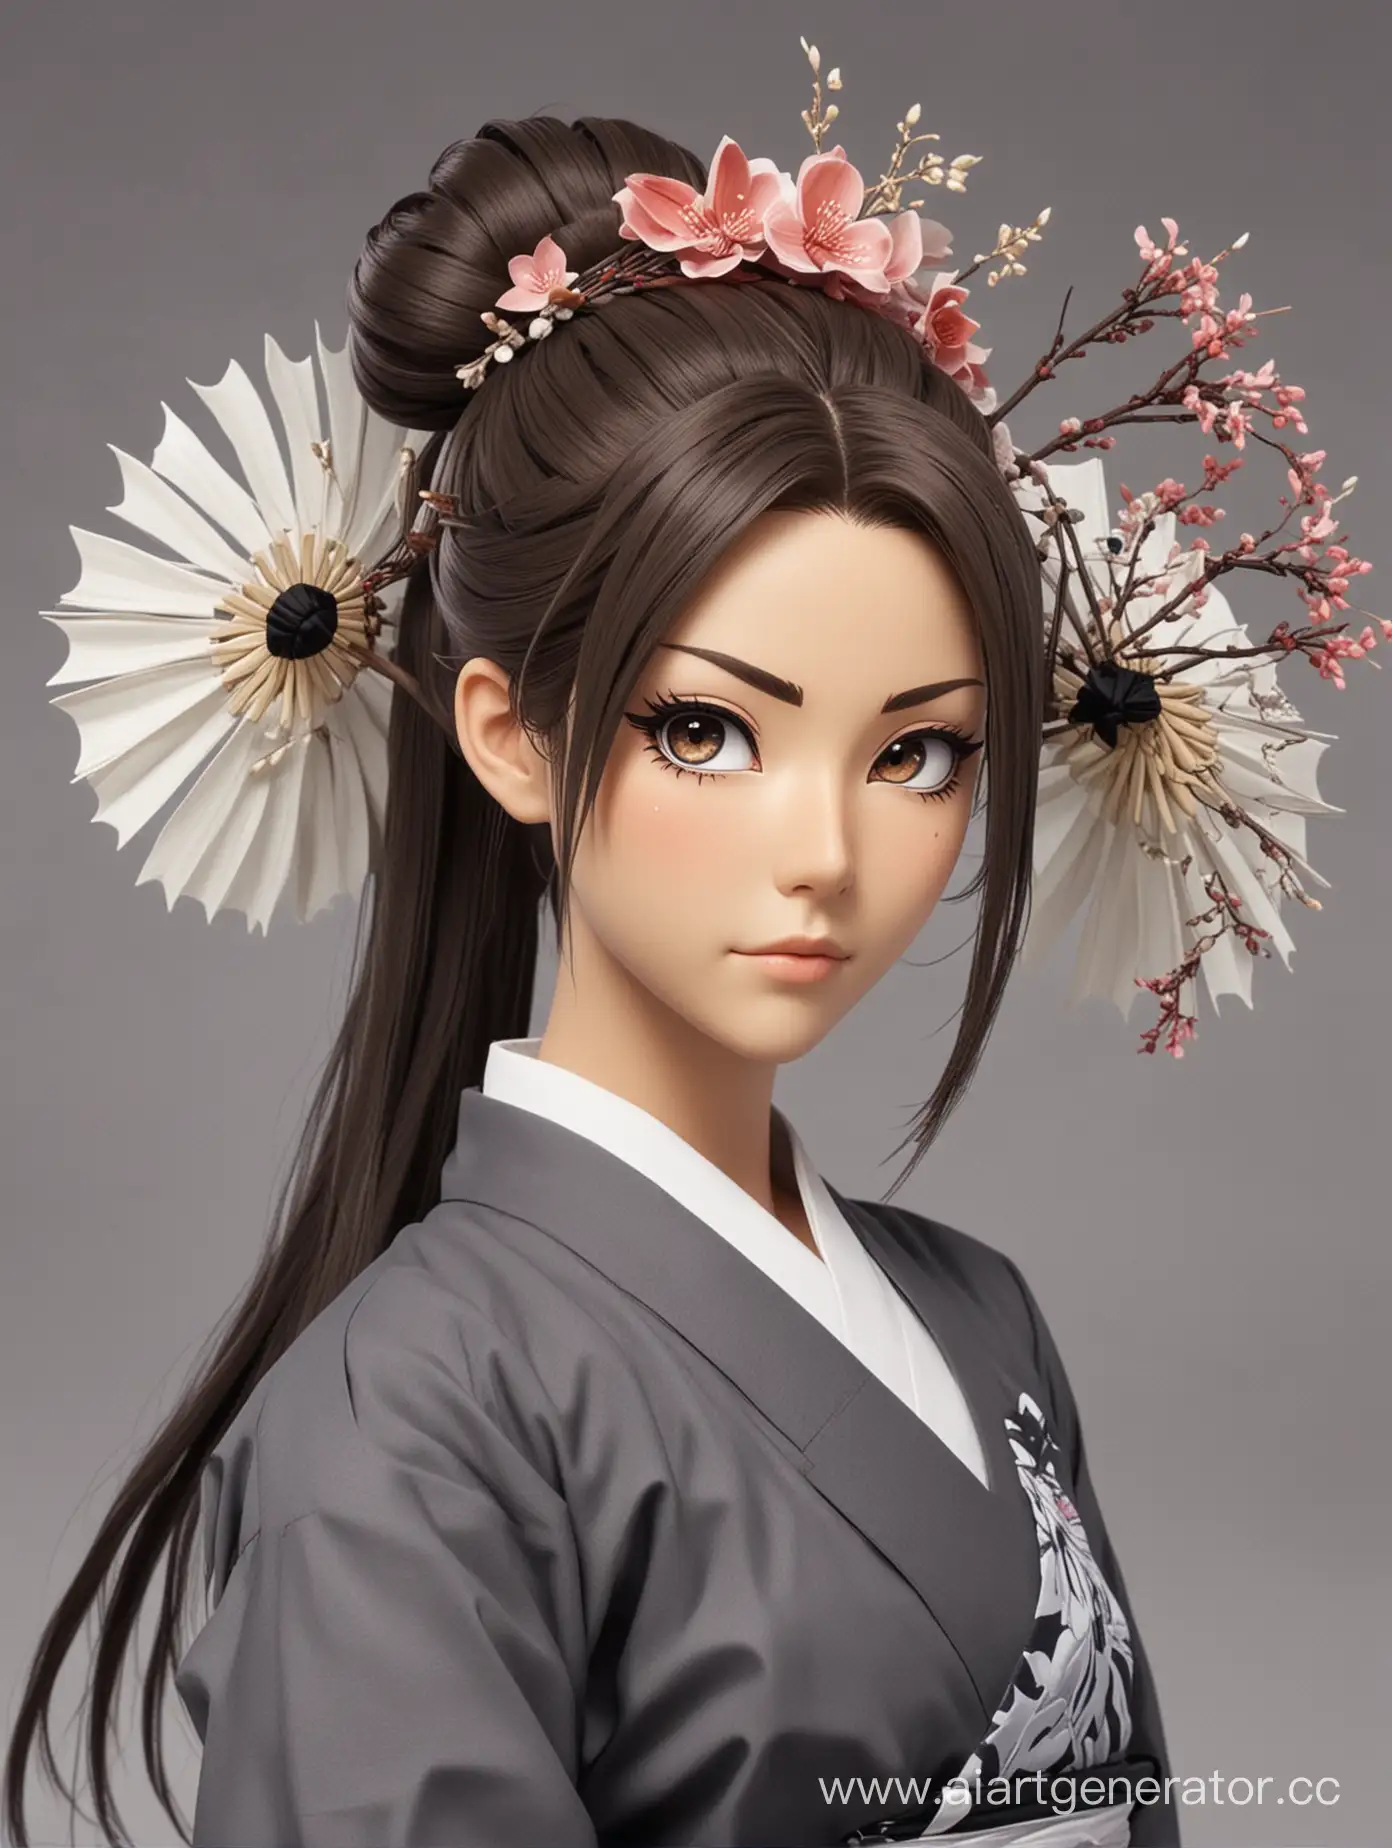 персонаж аниме блич, девушка синигами небольшого роста являющаяся лейтенантом 13-го отряда, брюнетка с длинными волосами собранными в пучке с помощью кандзаси, имеет серый веер с изображением цветов 